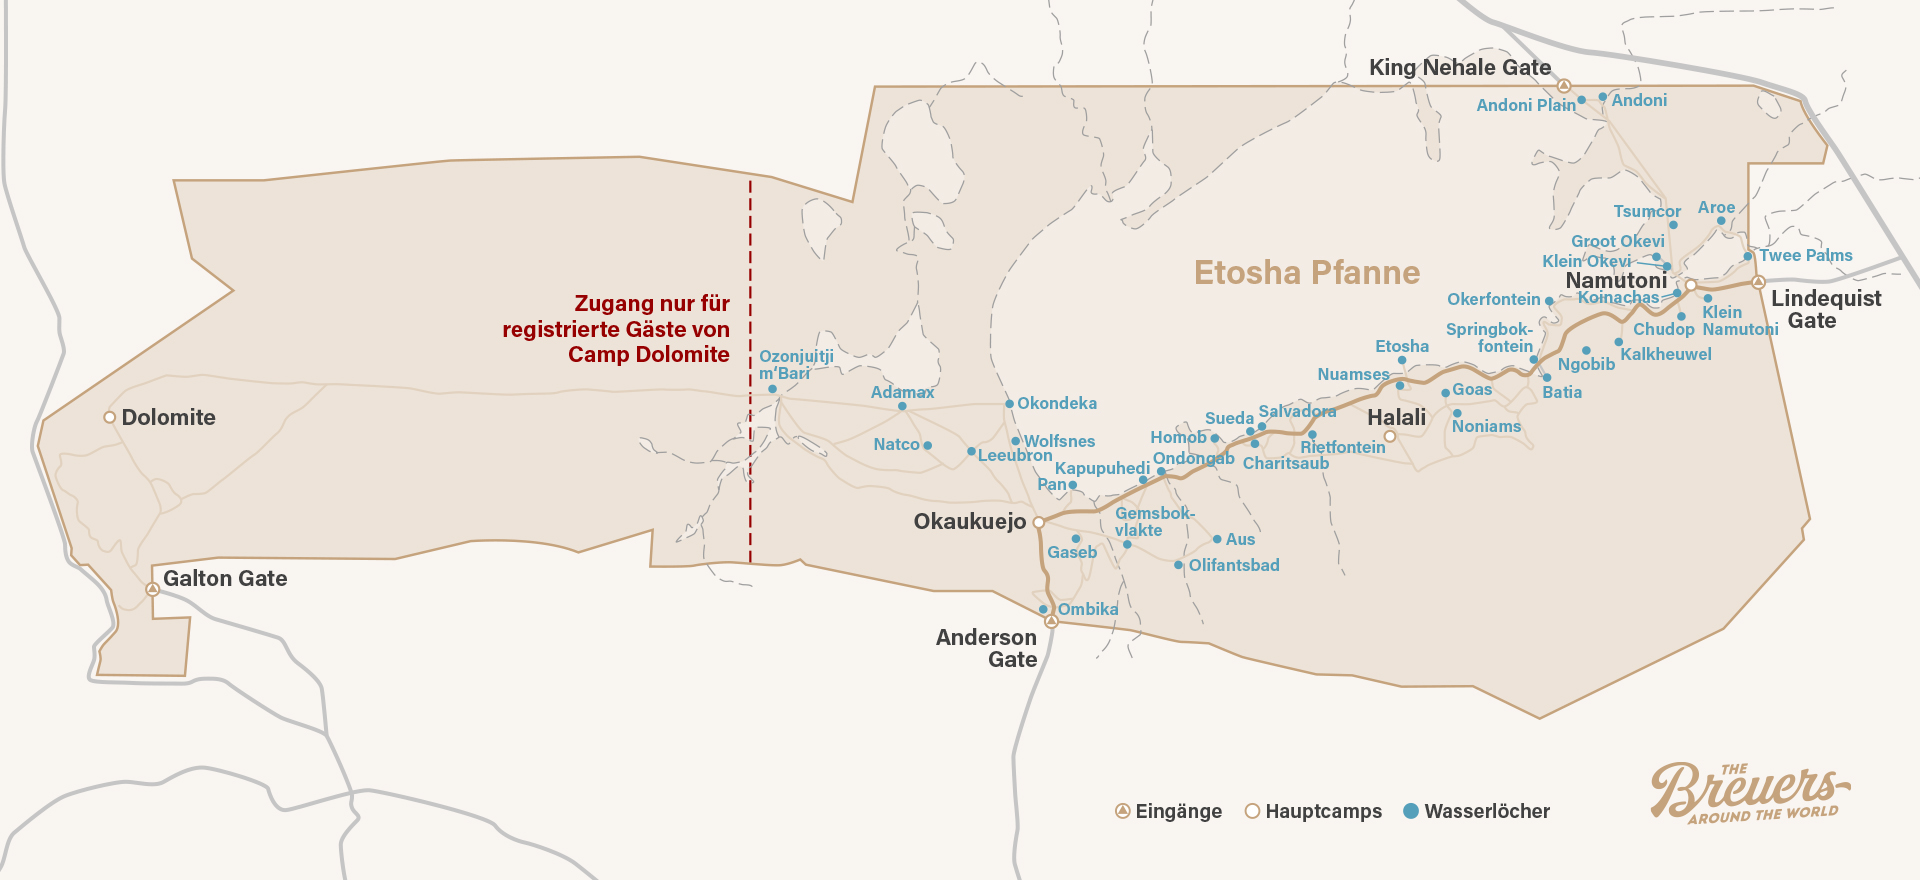 Karte vom Etosha Nationalpark